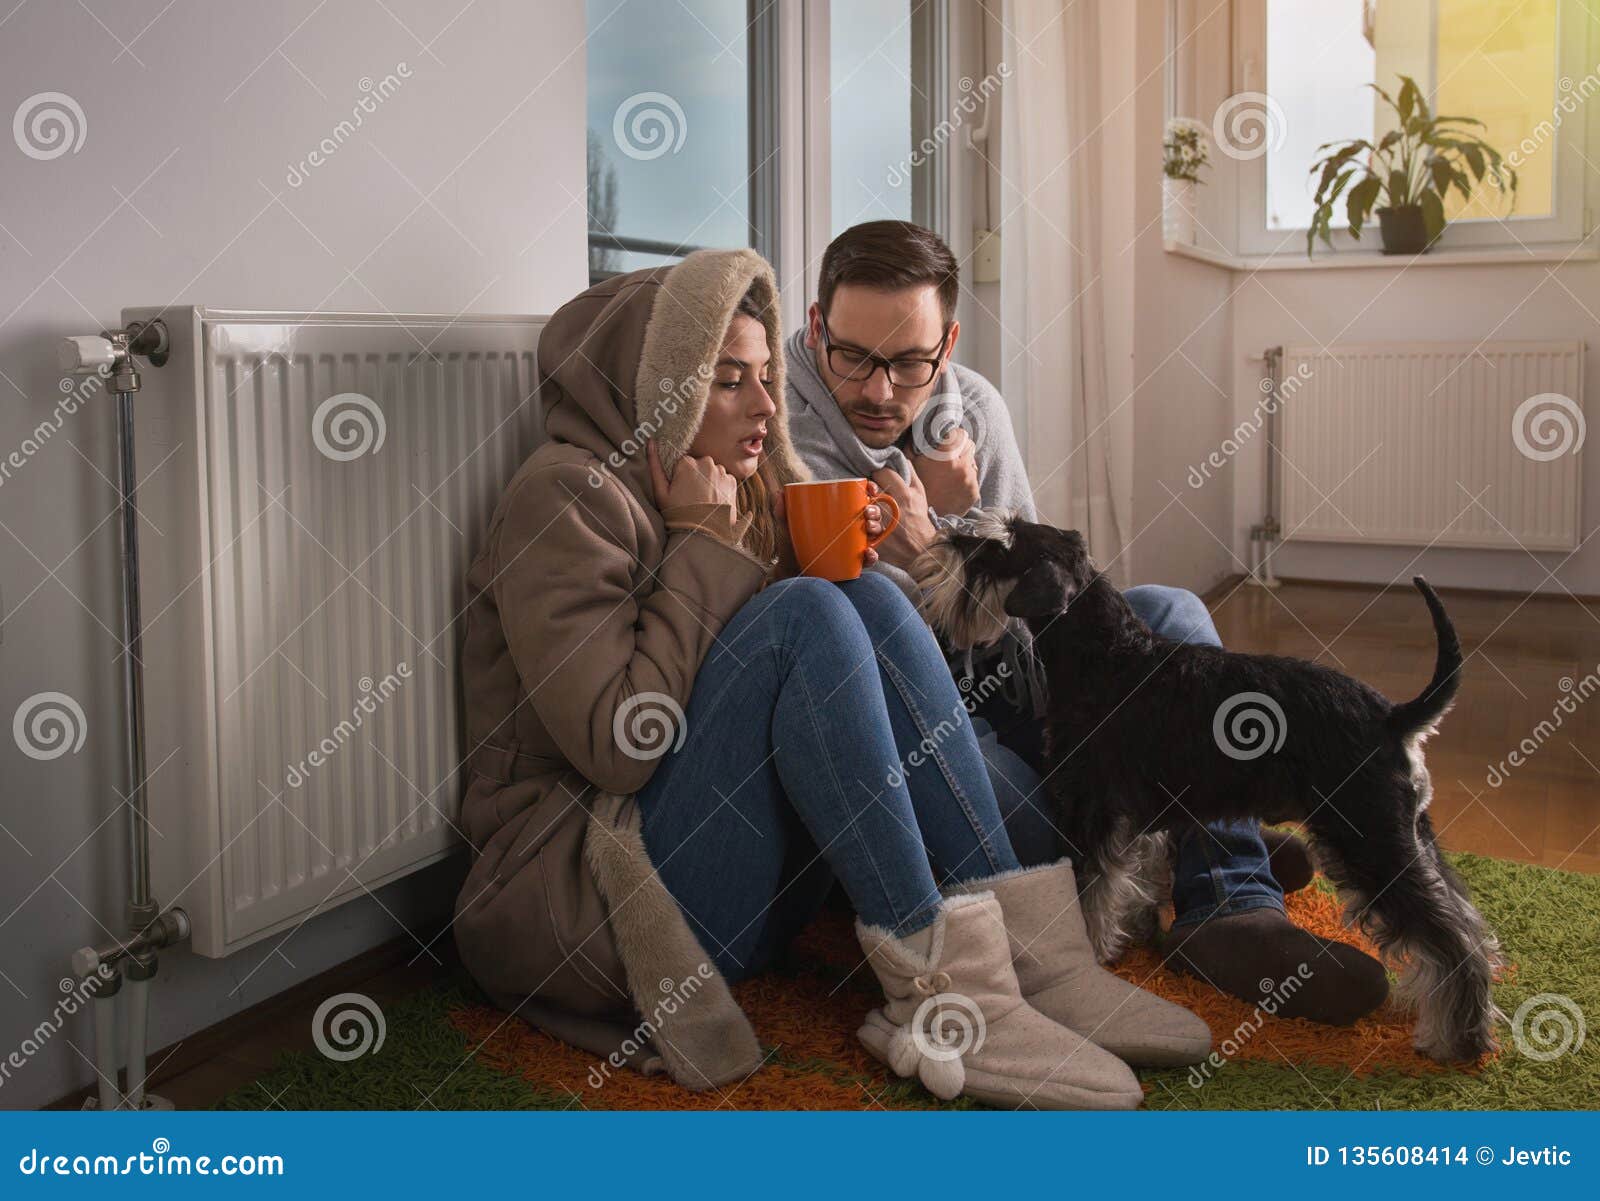 couple with dog sitting beside radiator and freezing